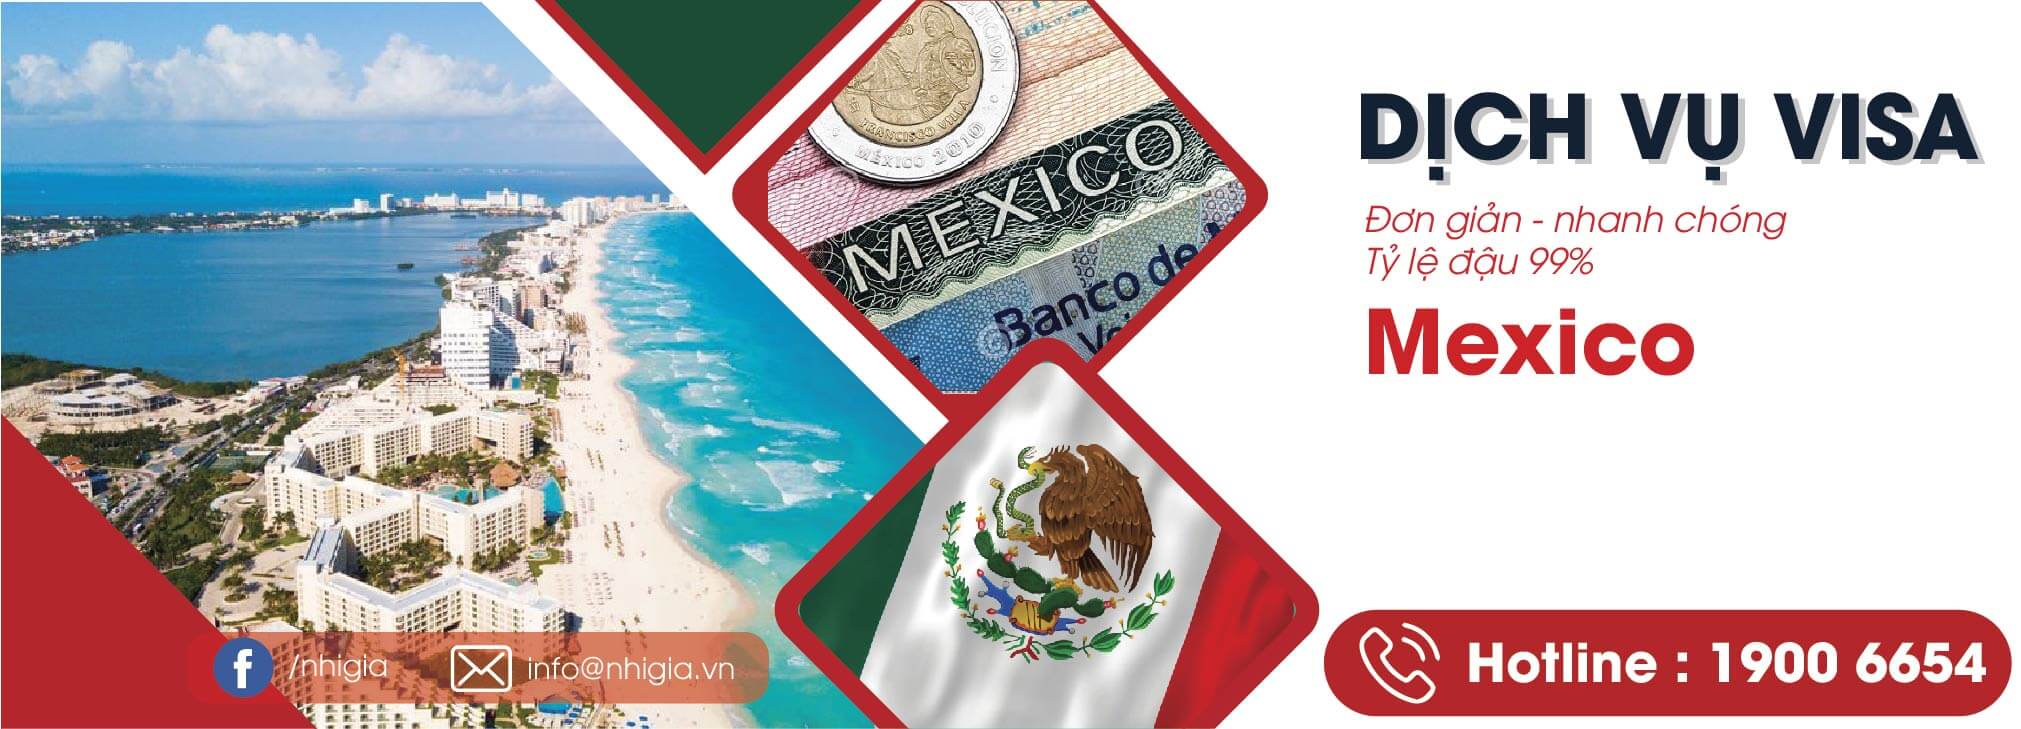 Dịch vụ Visa Mexico - Công Ty TNHH TM Và DV Nhị Gia